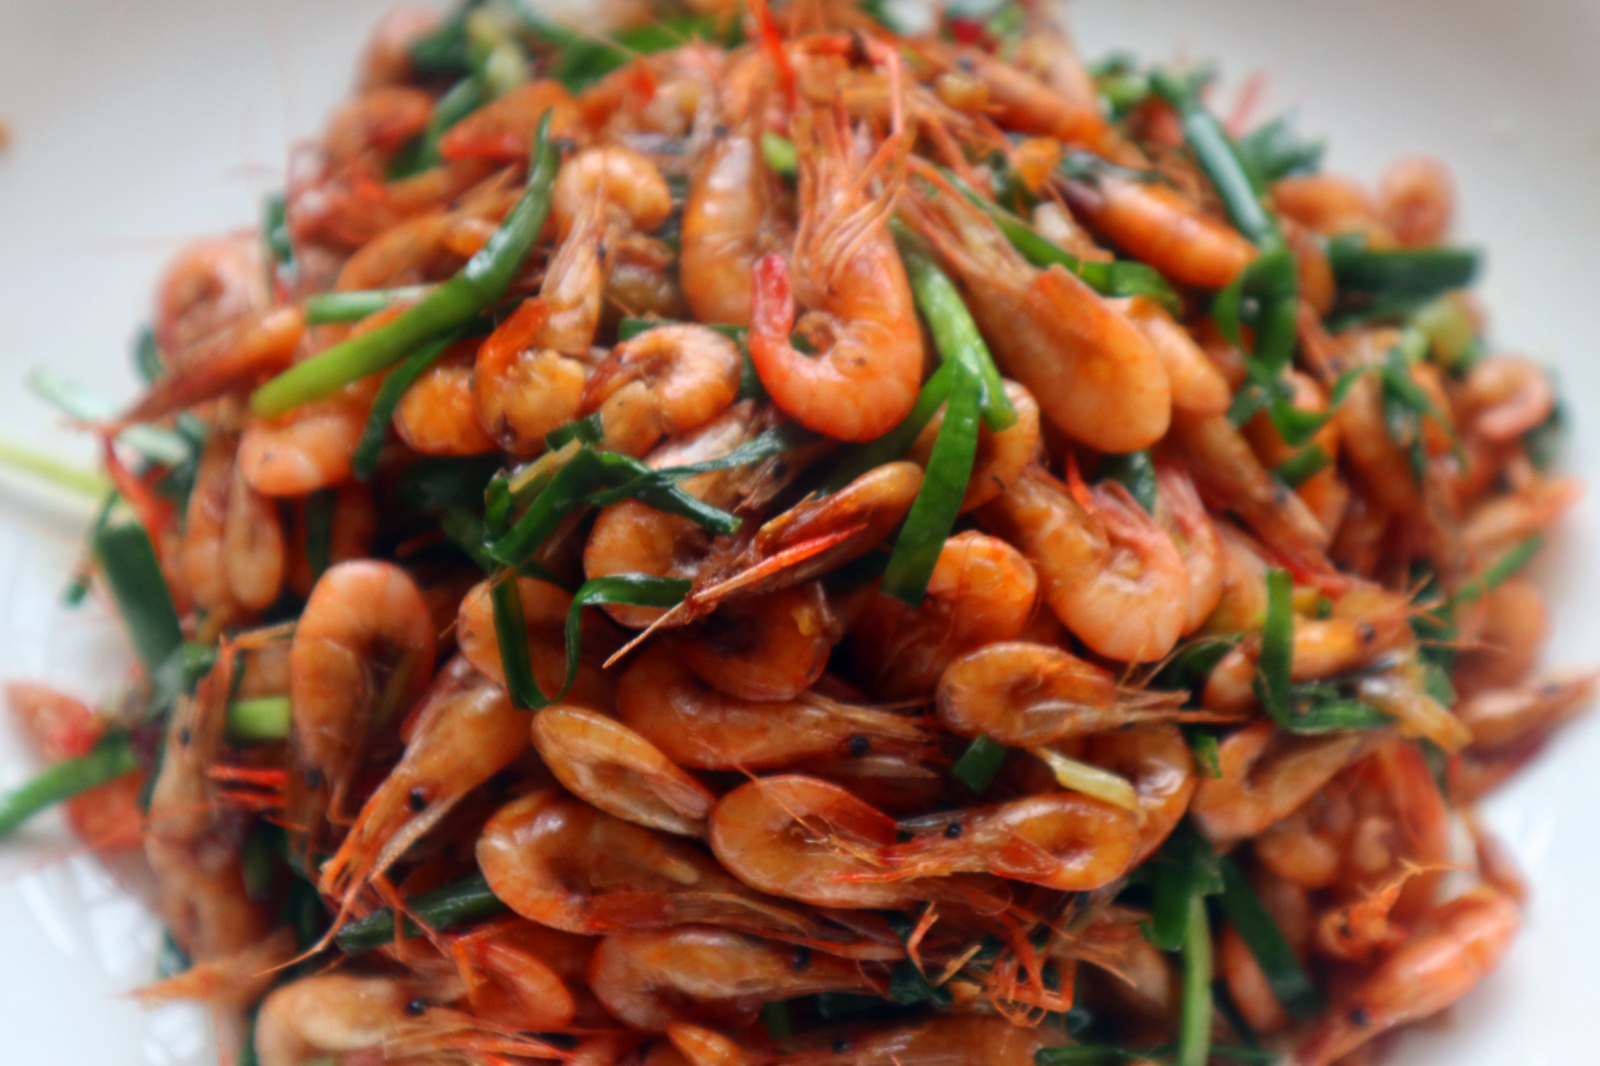 河虾与韭菜同炒,做法简单,味道鲜美,做下酒菜比花生米好吃